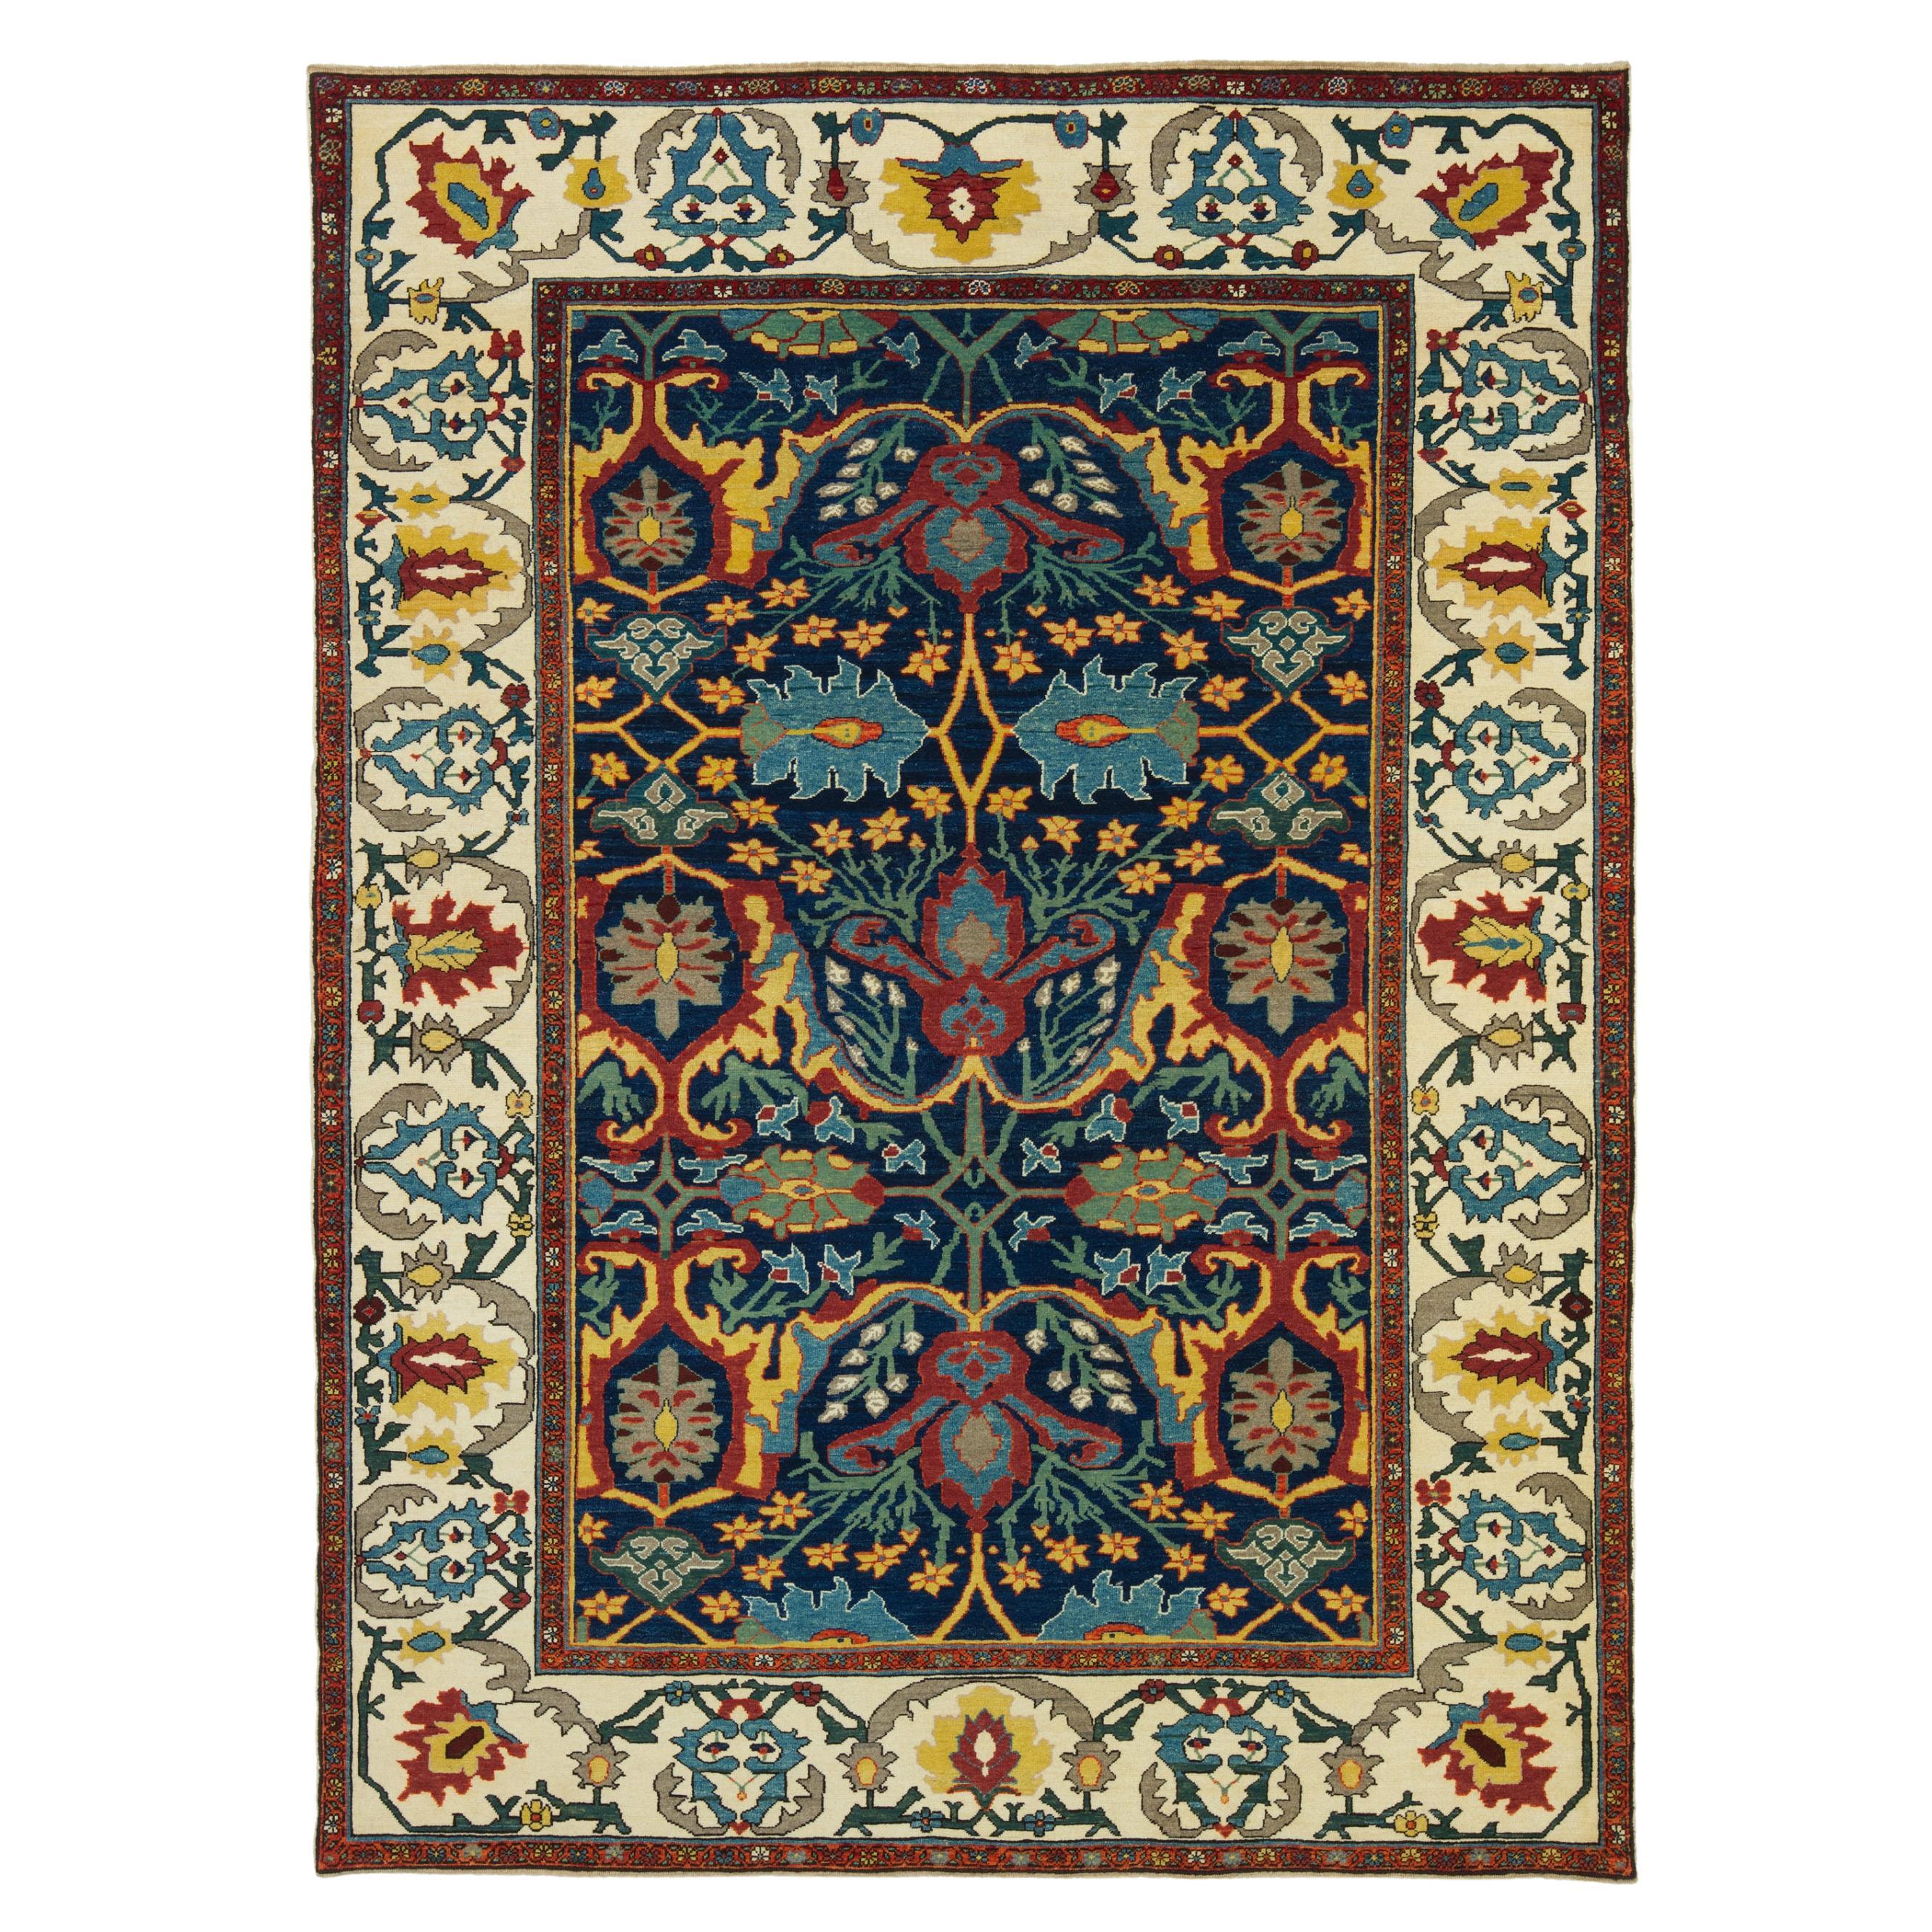 Ararat Rugs Bidjar Rug - 19th Century Design Persian Revival Carpet Natural Dyed For Sale